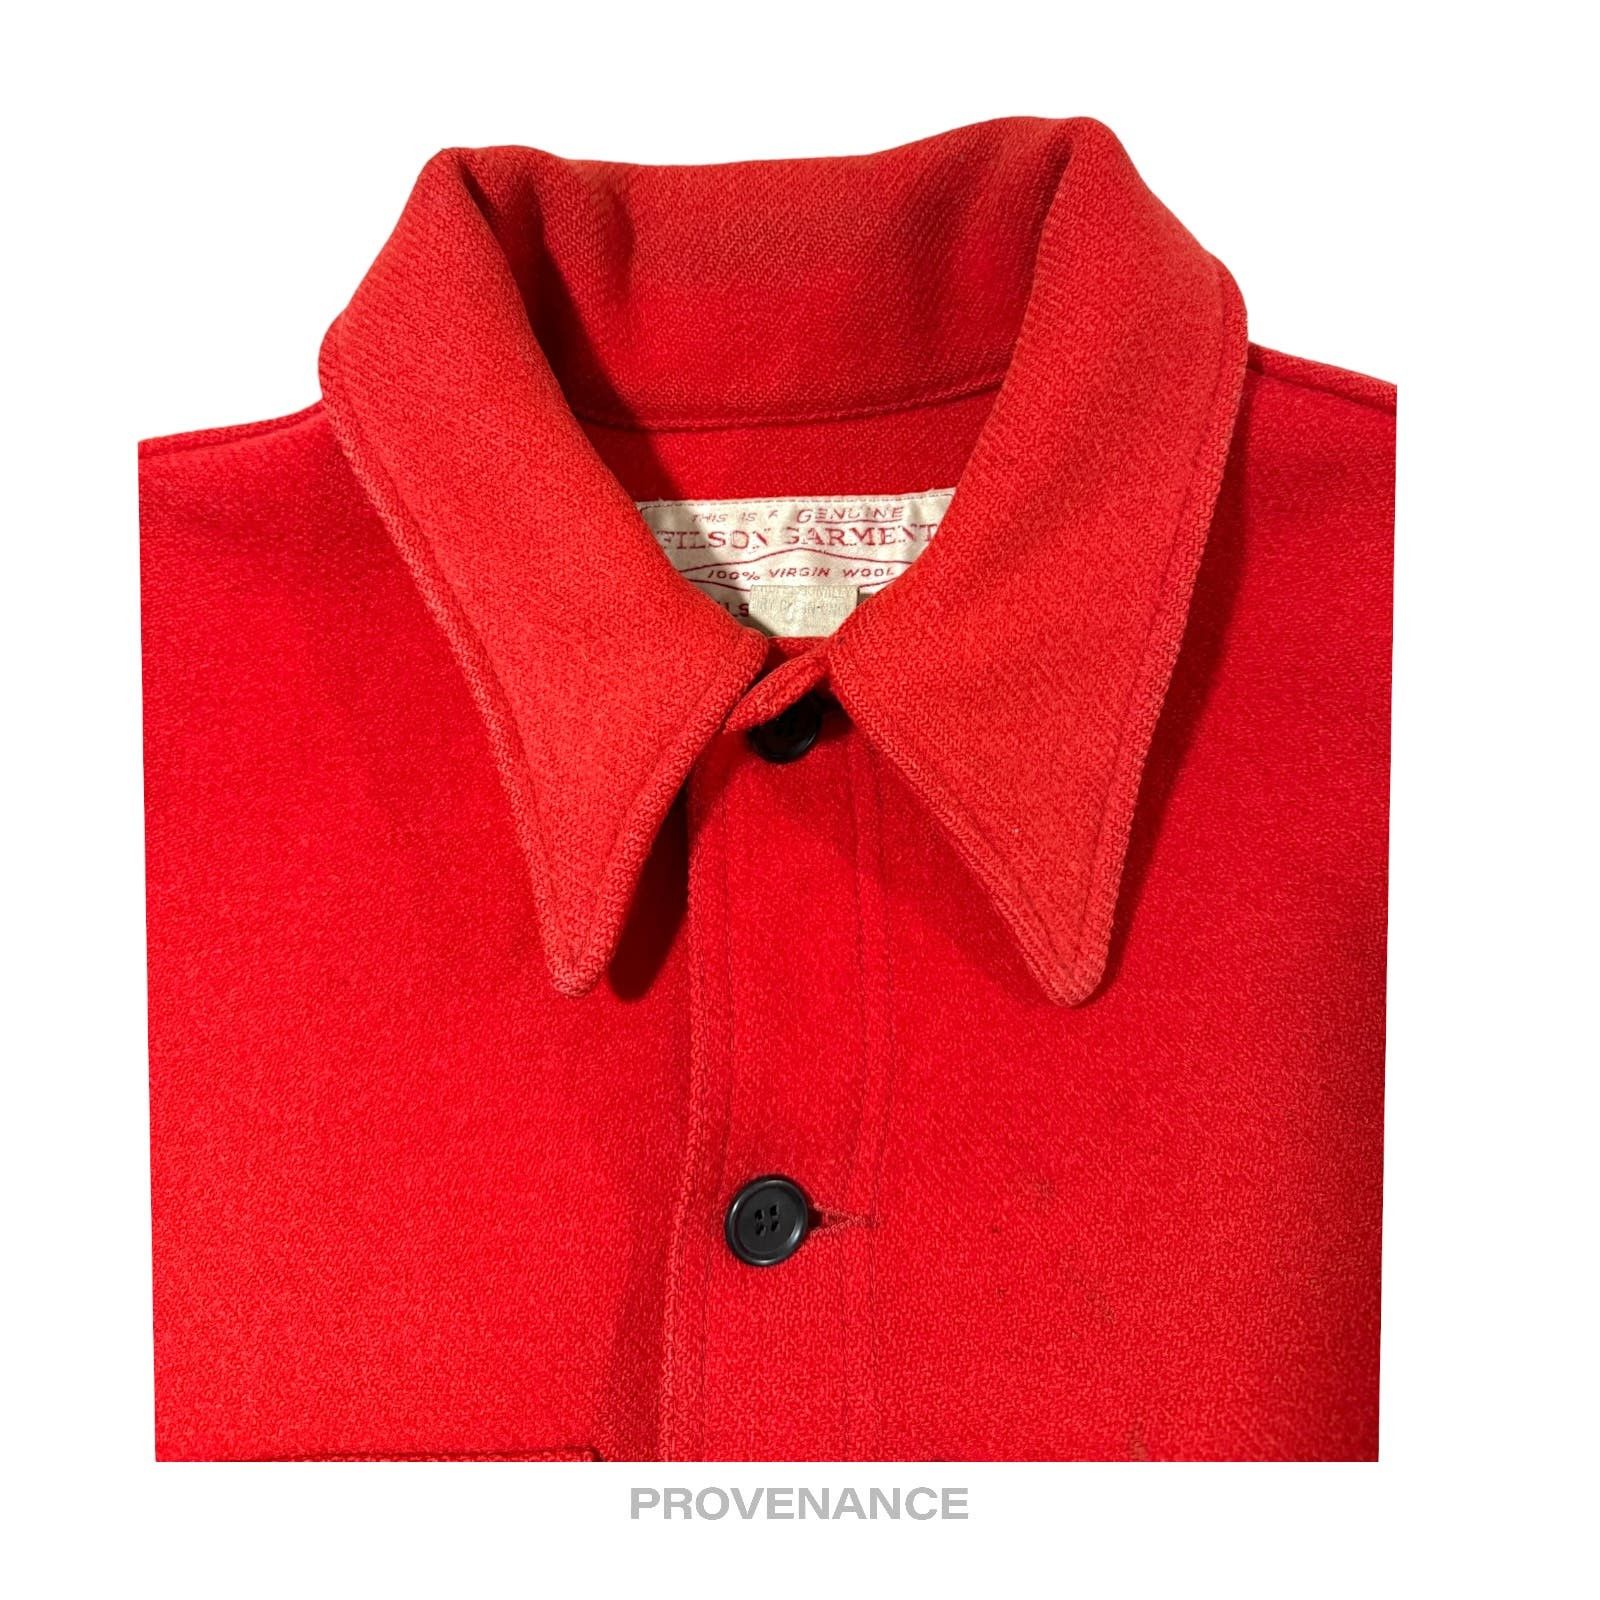 Filson 🔴 Filson Mackinaw Wool Cruiser Jacket - Scarlet Red 42 M Size US M / EU 48-50 / 2 - 4 Thumbnail